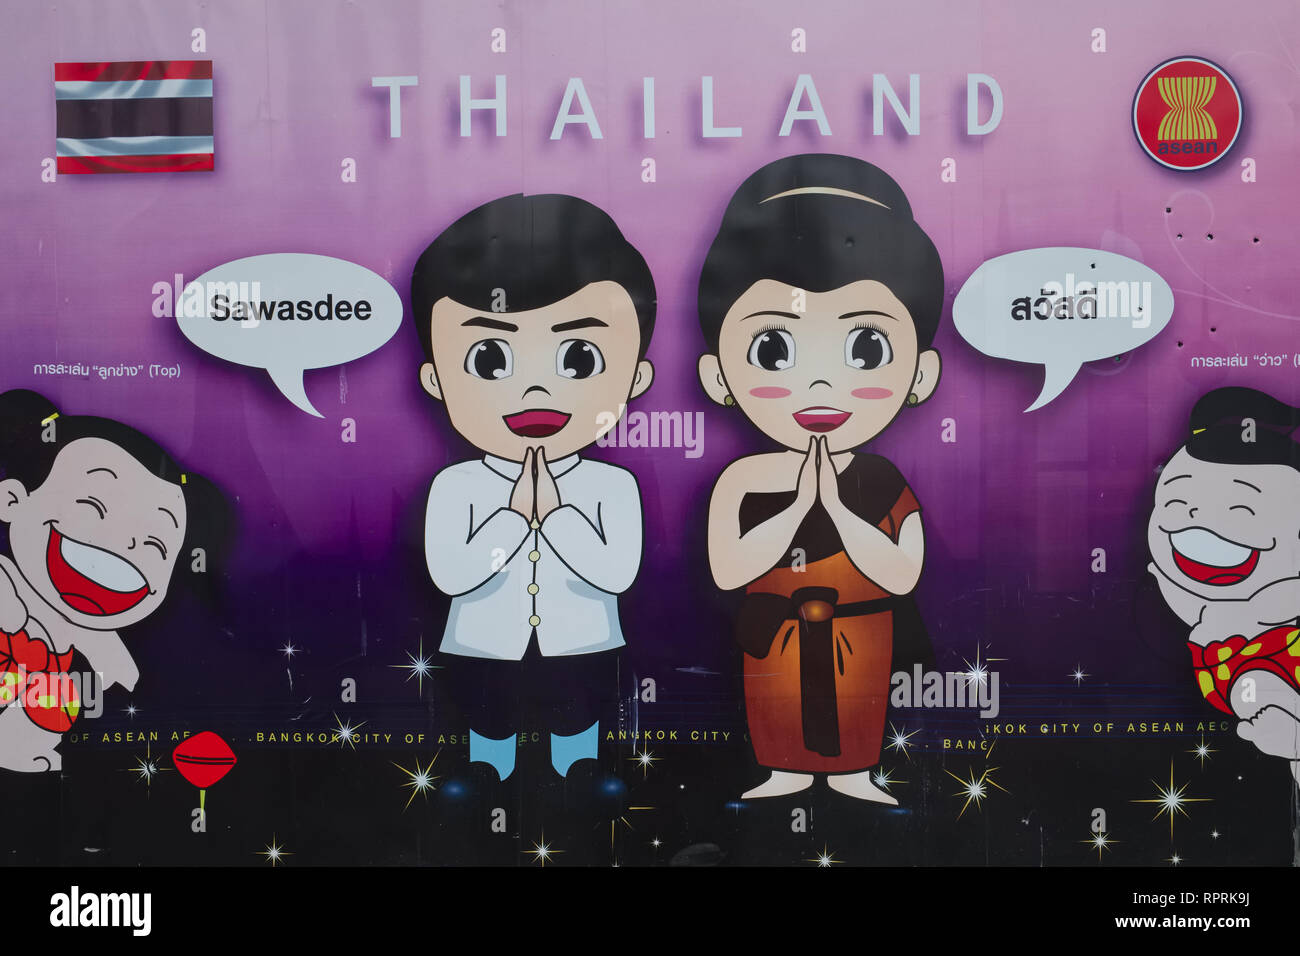 Une affiche lors d'un événement de l'APEC représentant thaïlandais stéréotypées aspects : le message d'accueil traditionnel thaïlandais 'Sawasdee' et le sourire thaïlandais ; Bangkok, Thaïlande Banque D'Images